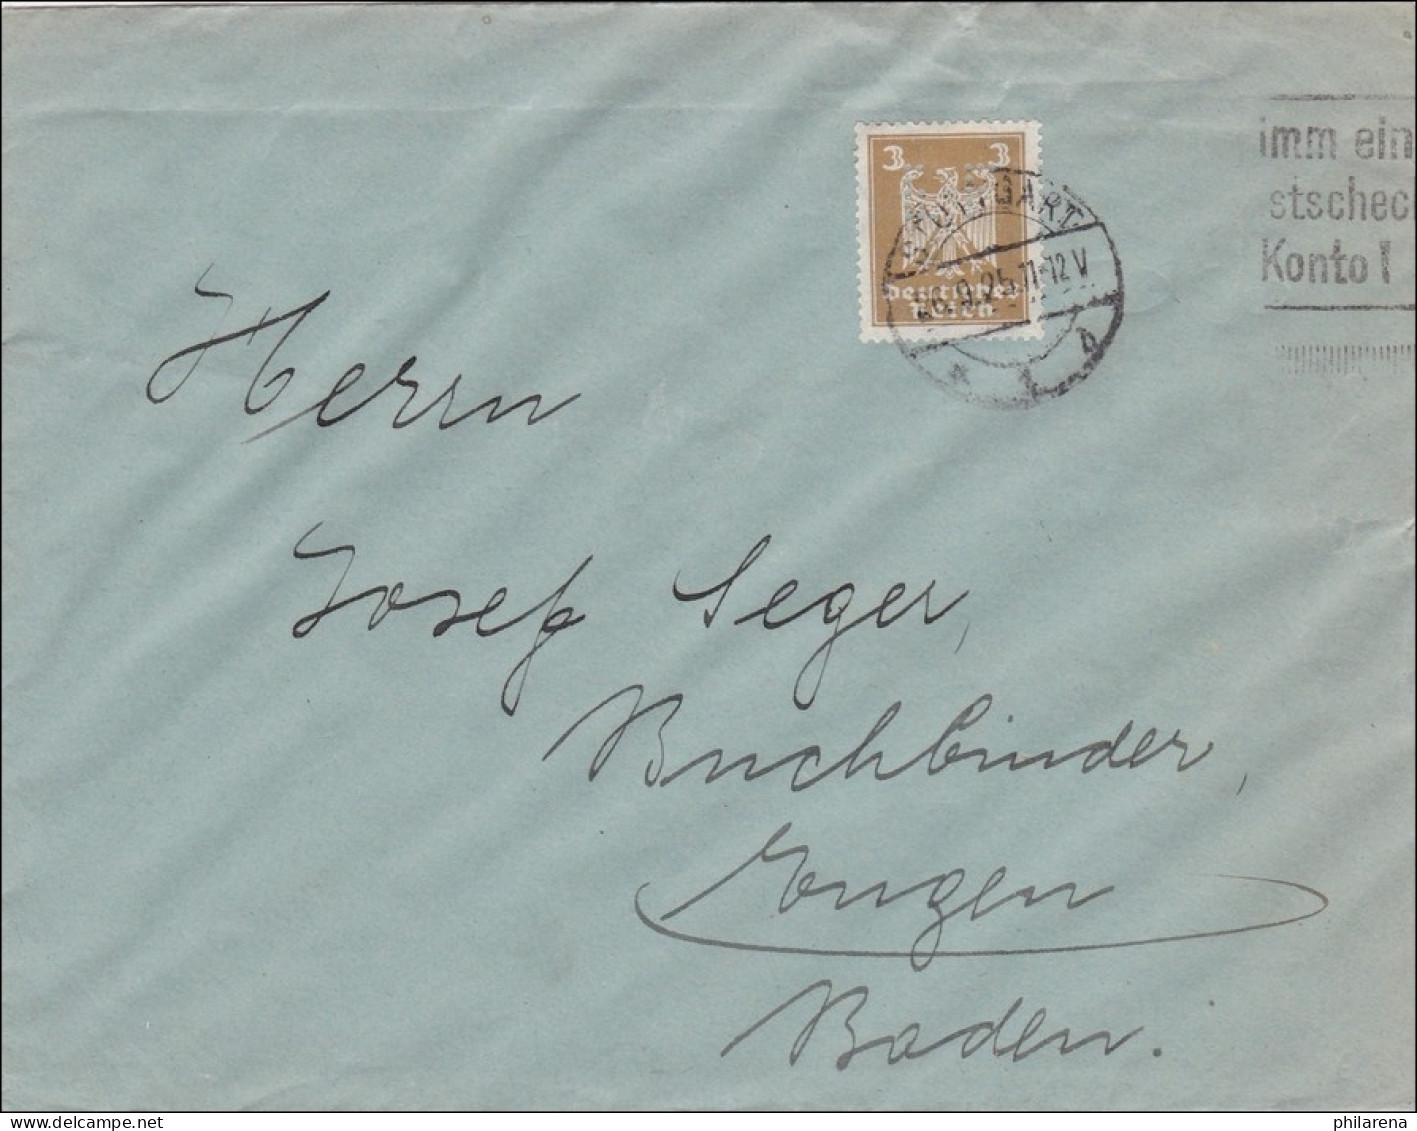 Perfin: Brief Aus Stuttgart, 1925, EF - Briefe U. Dokumente